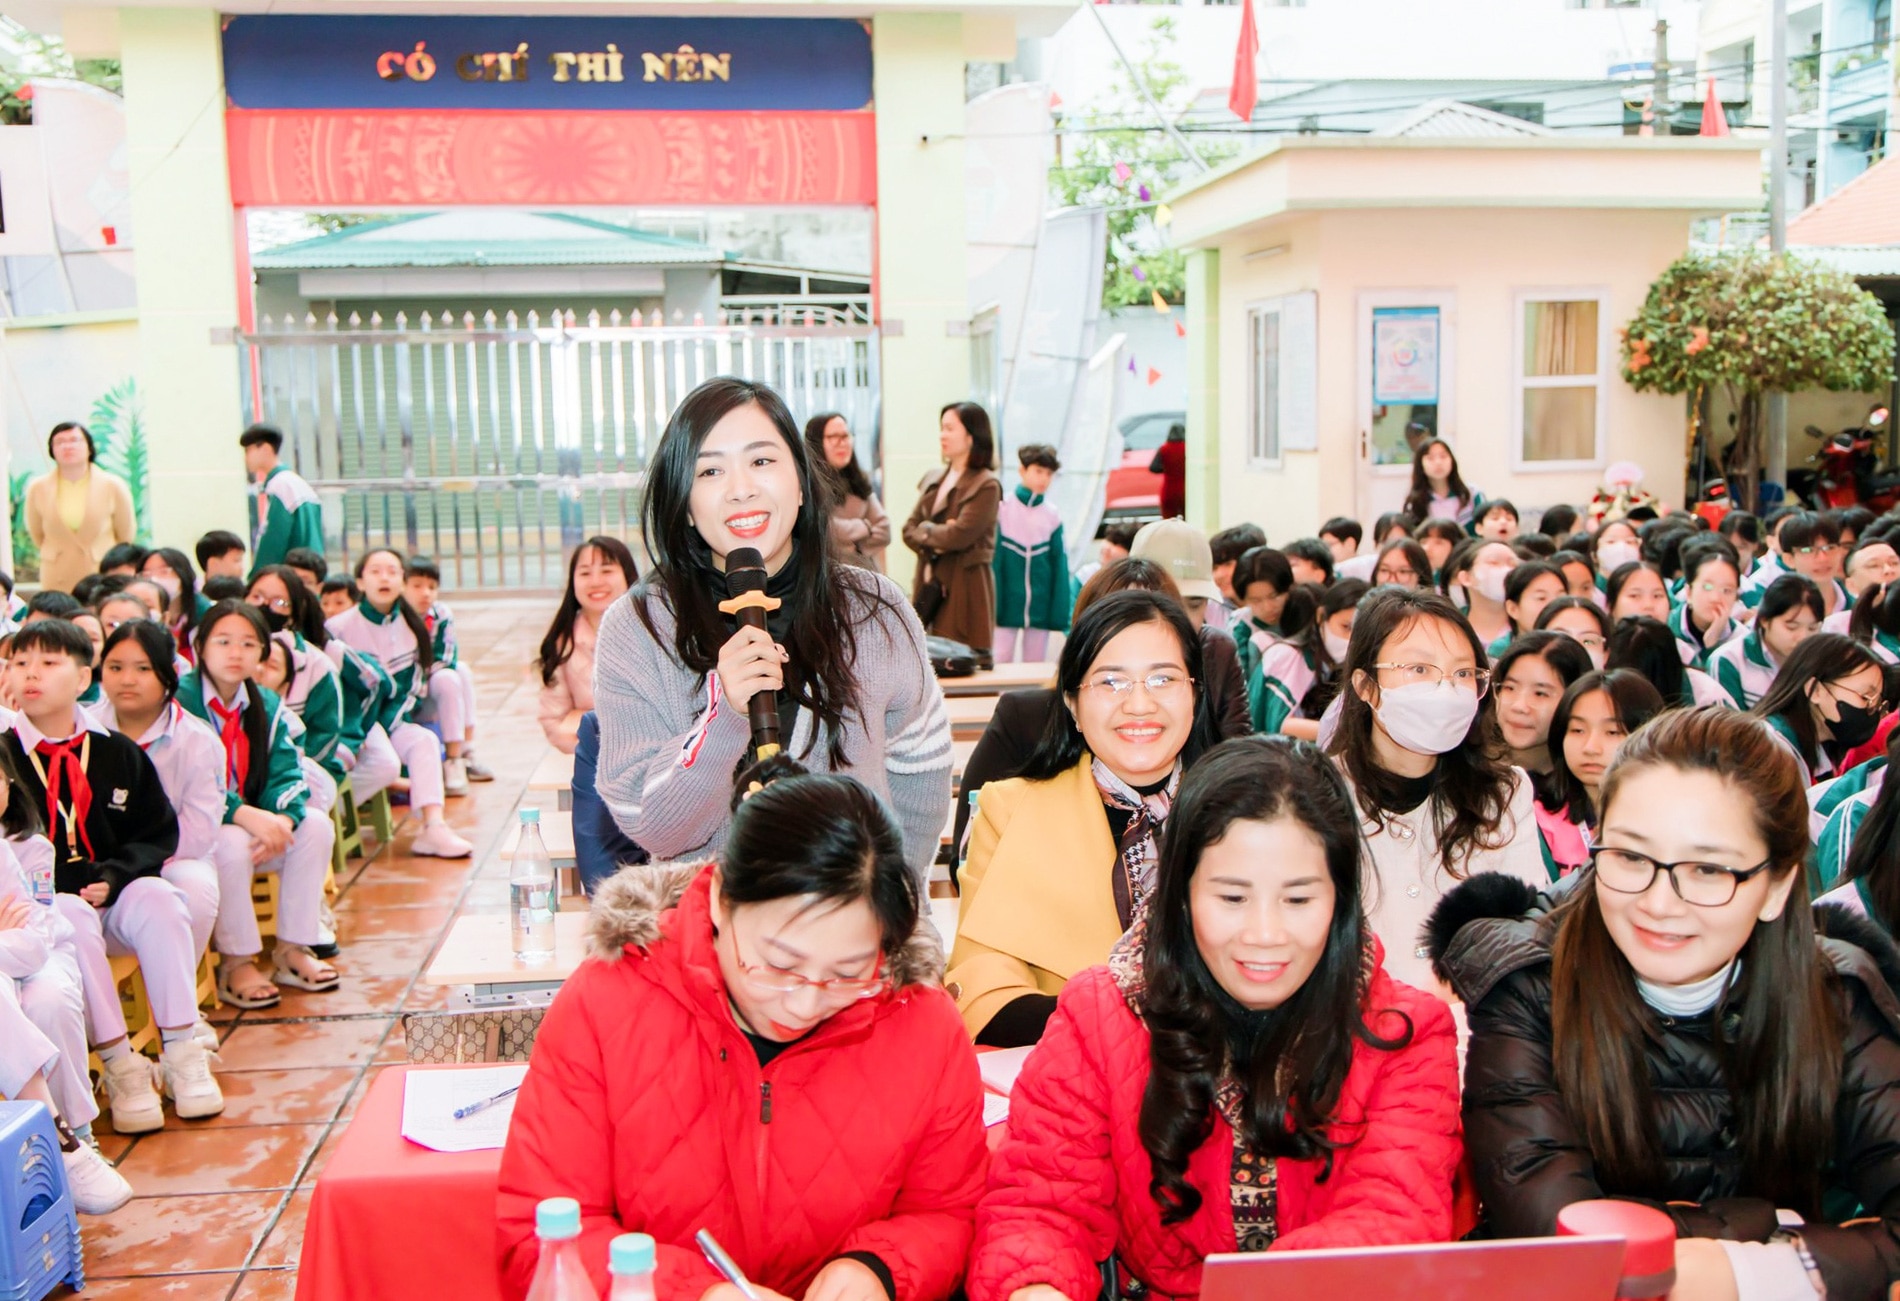 Trường THCS Trọng Điểm, TP Hạ Long luôn nằm trong top đầu của tỉnh Quảng Ninh nhờ đội ngũ giáo viên nhiều kinh nghiệm, năng lực - Ảnh: Trường THCS Trọng Điểm